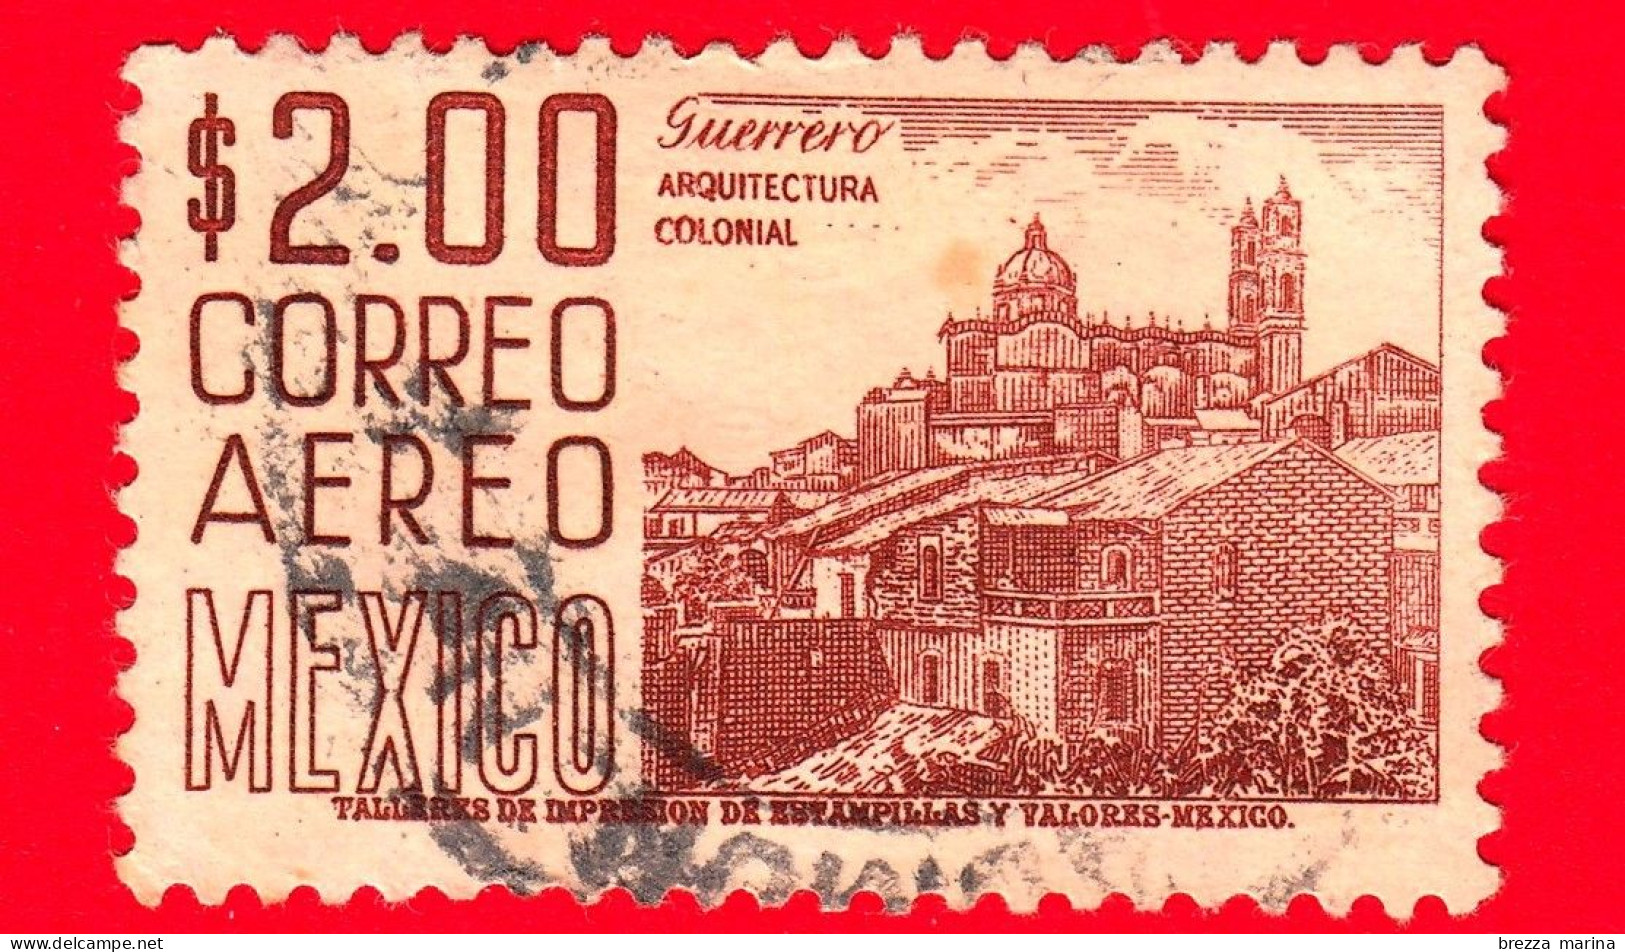 MESSICO - Usato - 1962 - Architettura Coloniale - Chiesa Di Santa Prisca, Guerrero  - 2.00 - México